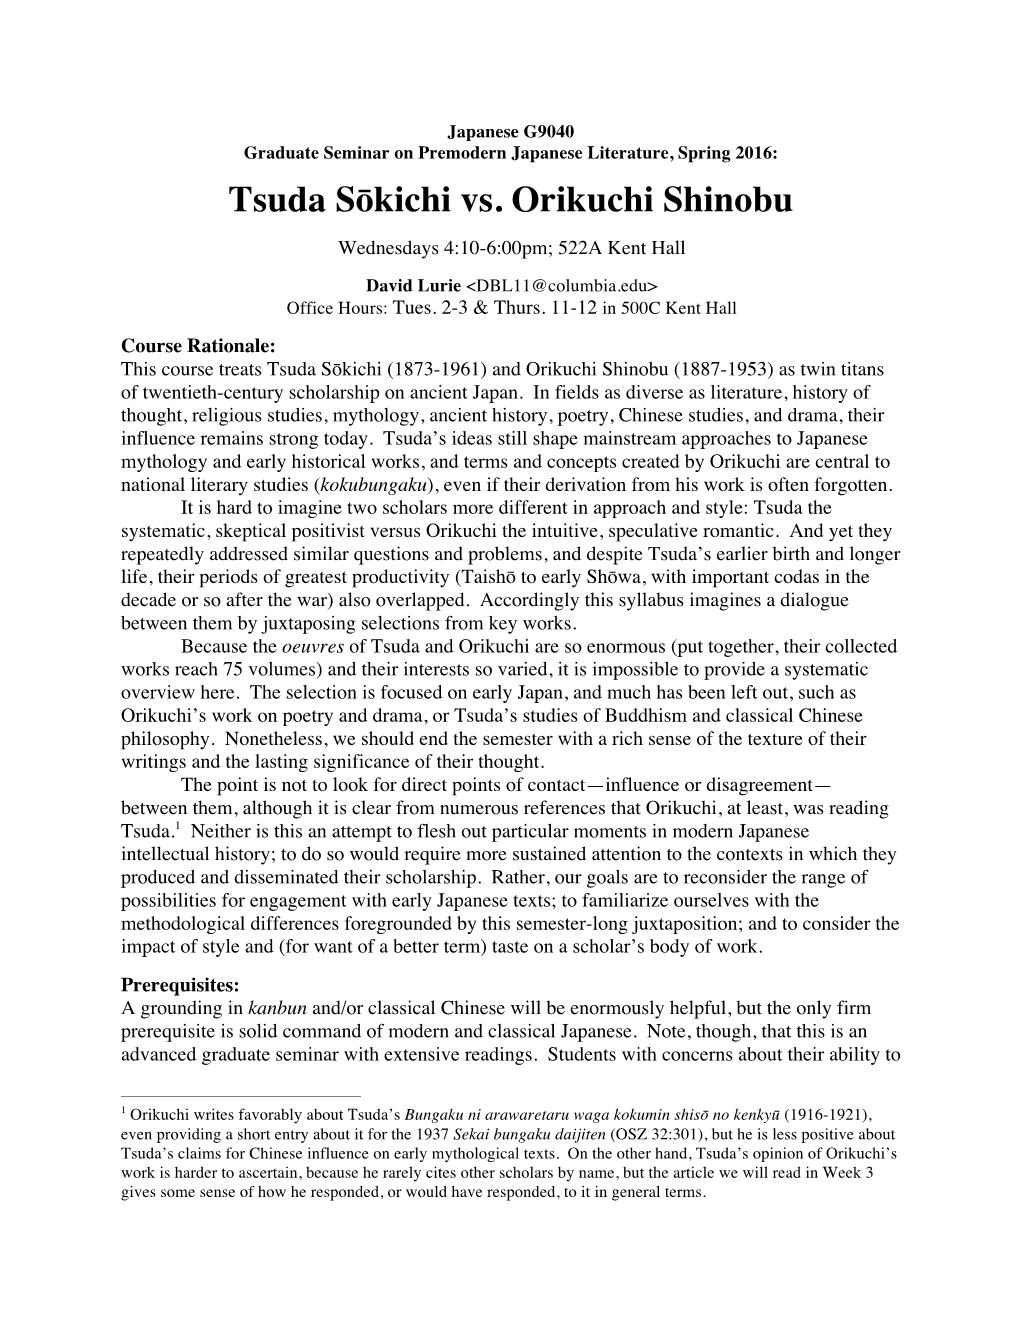 Tsuda Sōkichi Vs. Orikuchi Shinobu